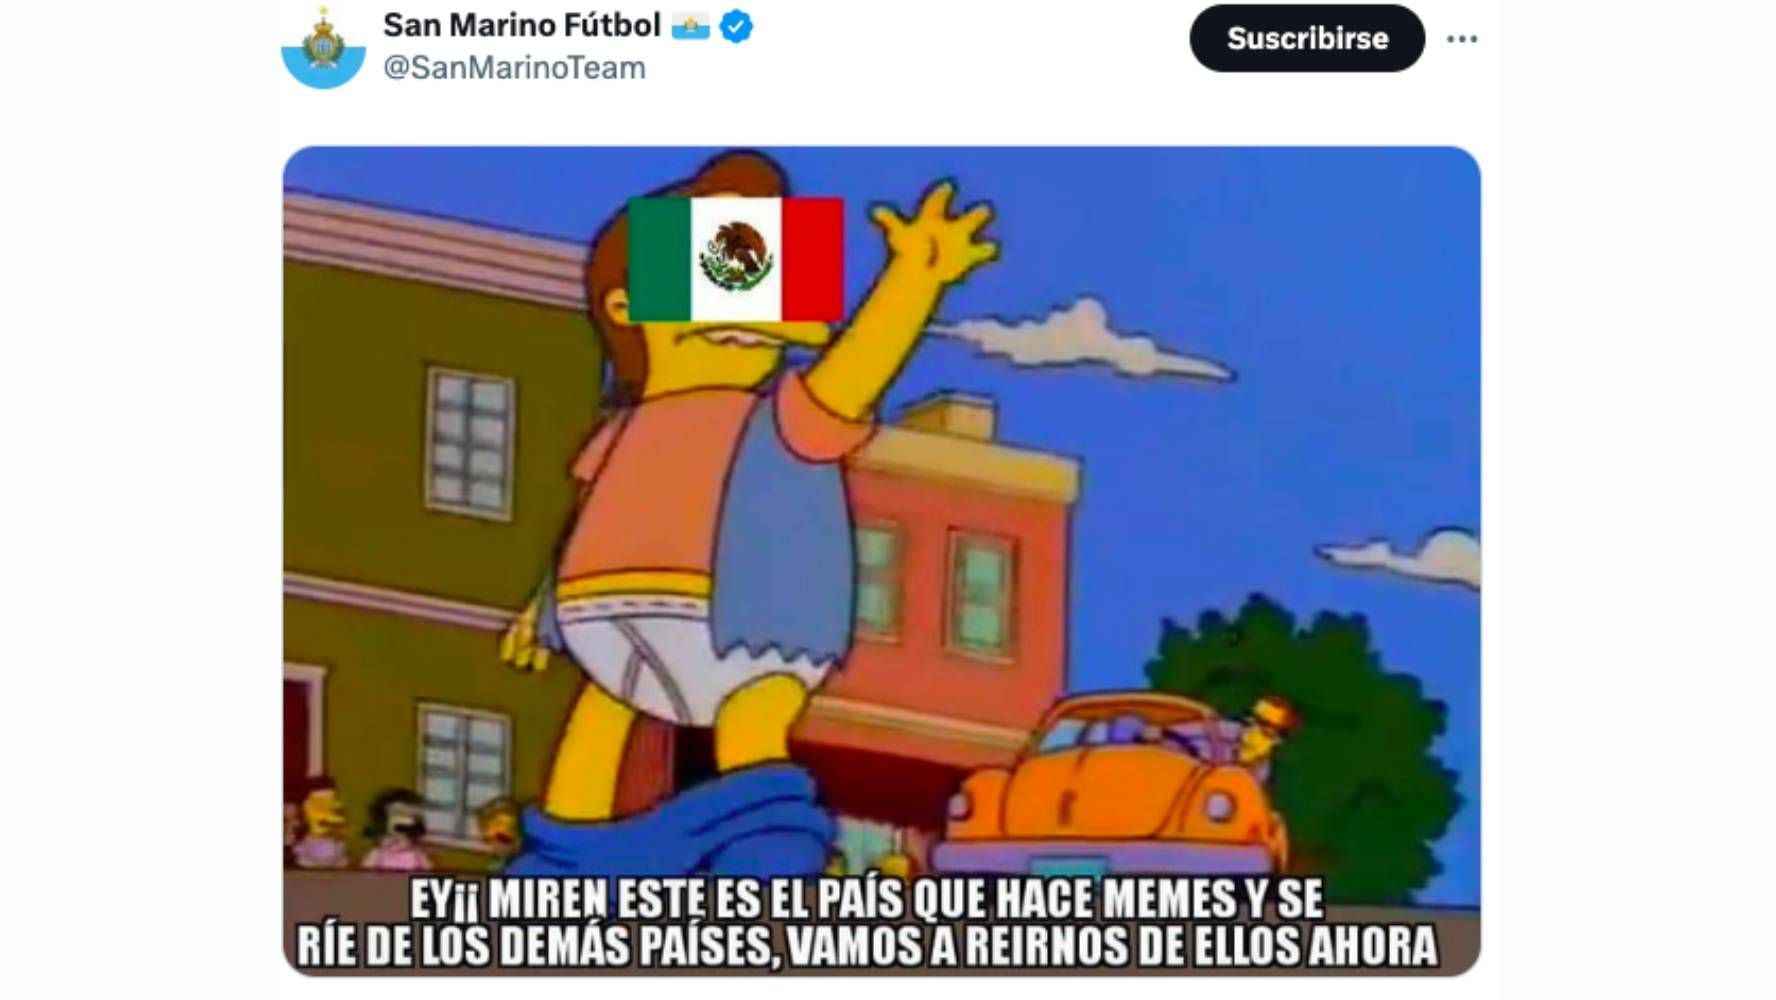 La cuenta de la Selección de San Marino alentó las burlas a México tras perder con Venezuela. (Foto: X)